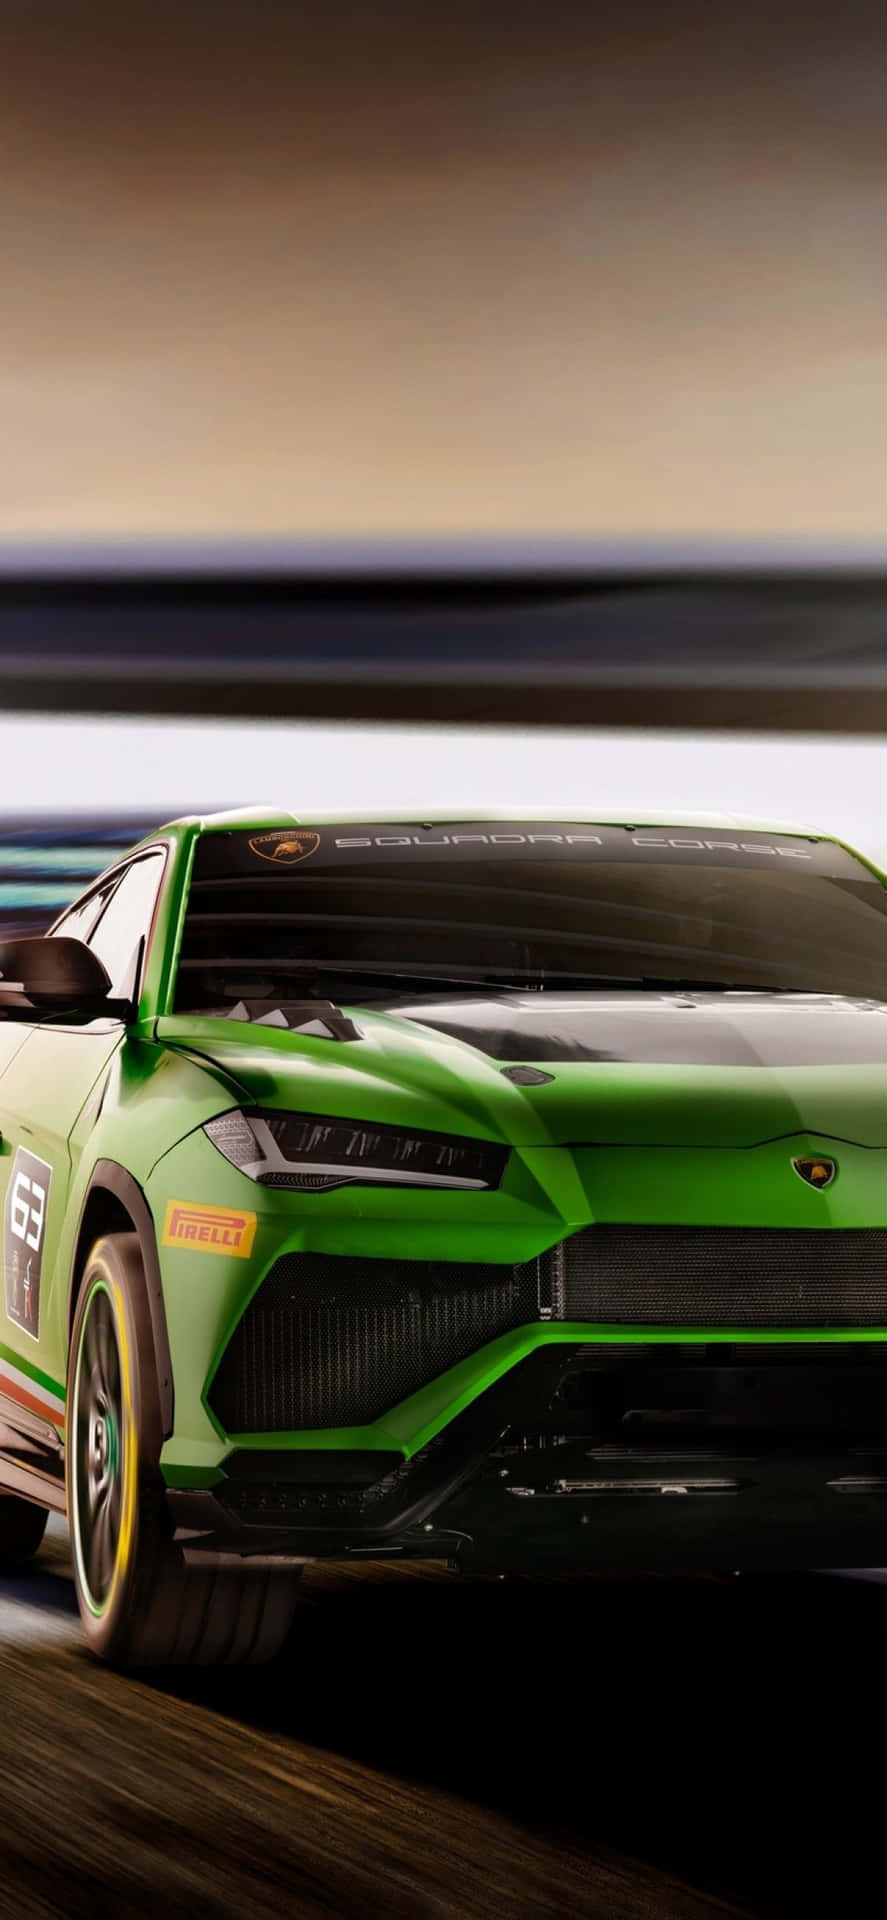 Spüredie Kraft Des Windes In Deinem Haar Mit Einem Grünen Lamborghini Iphone Wallpaper